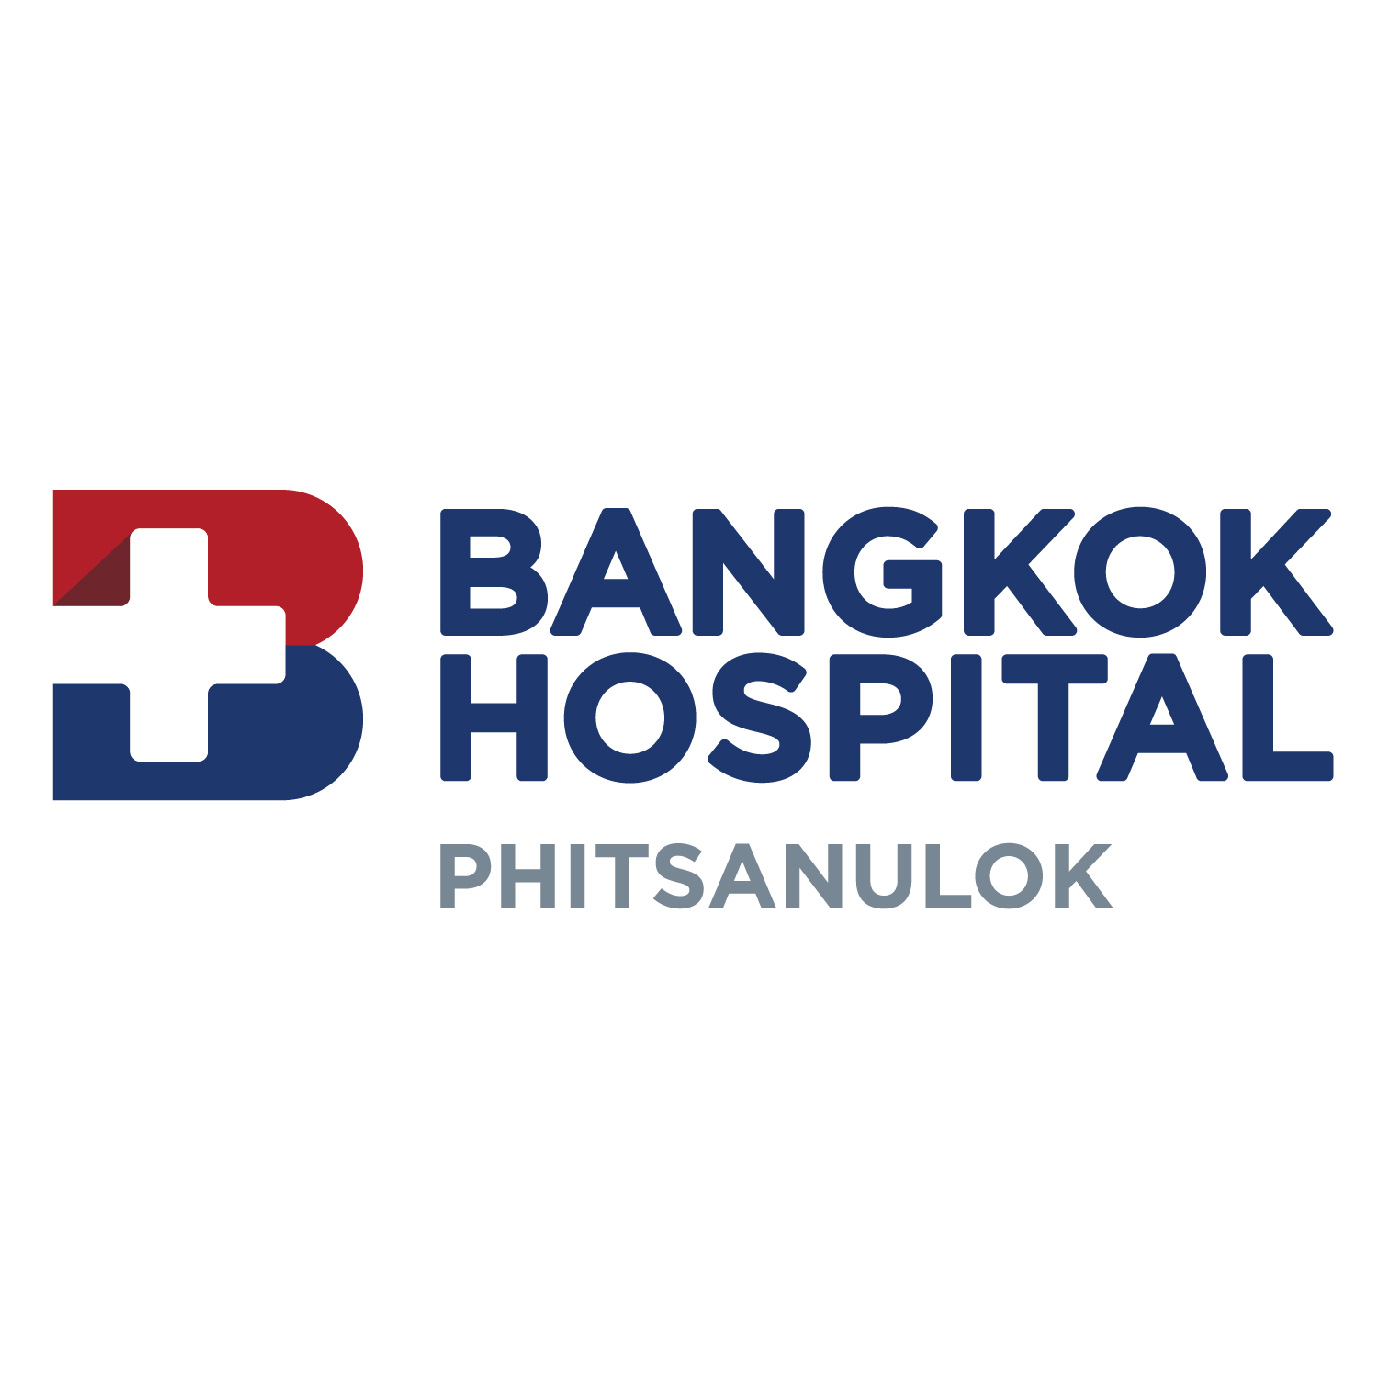 Bangkok Hospital Phitsanulok 01